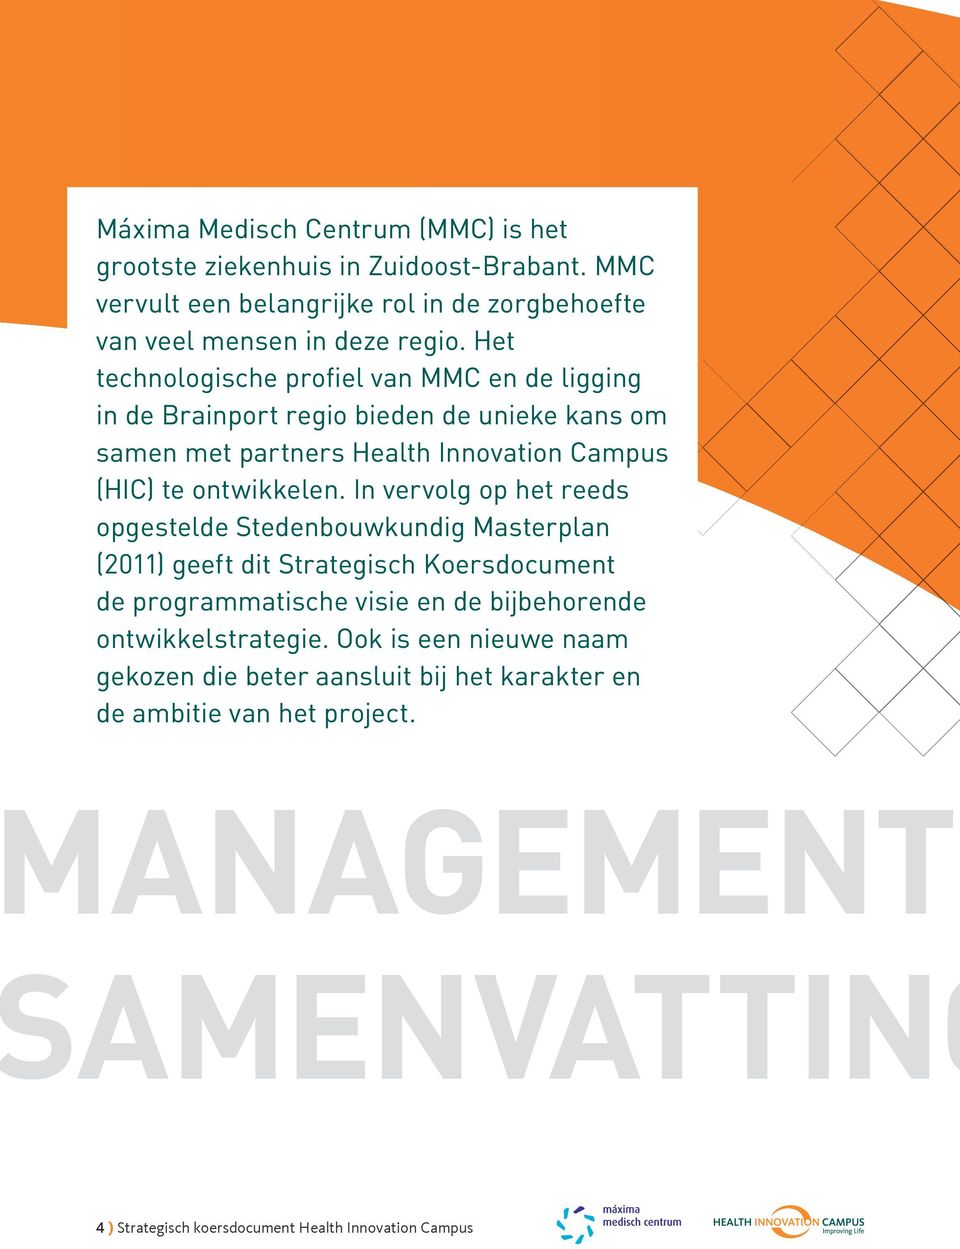 Het technologische profiel van MMC en de ligging in de Brainport regio bieden de unieke kans om samen met partners Health Innovation Campus (HIC) te ontwikkelen.